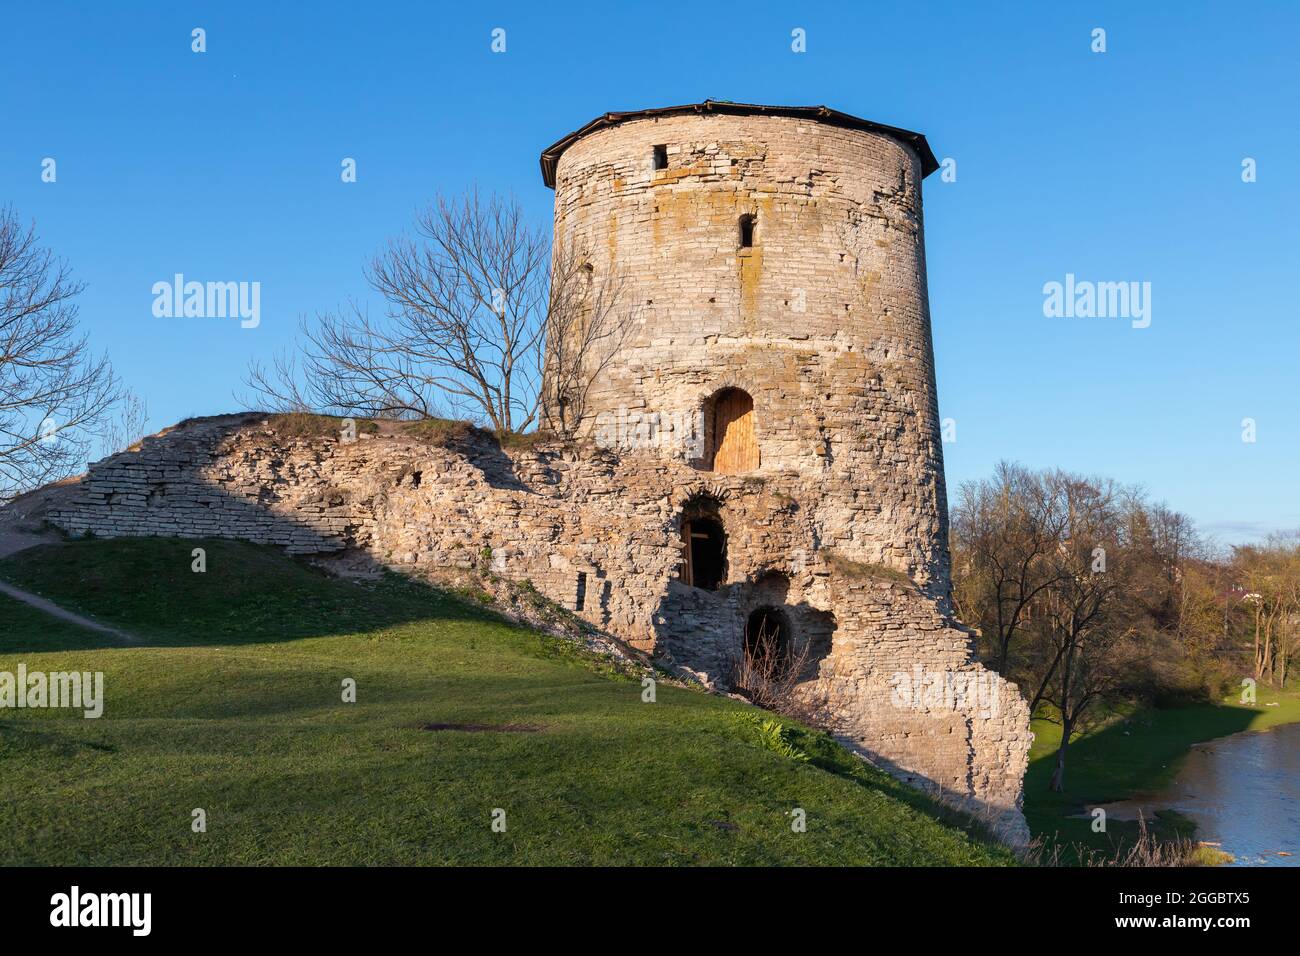 Esterno della Torre Gremyachaya, la torre costruita nel 1525 come parte del sistema difensivo della Fortezza di Pskov, sulla riva destra del Pskova Foto Stock